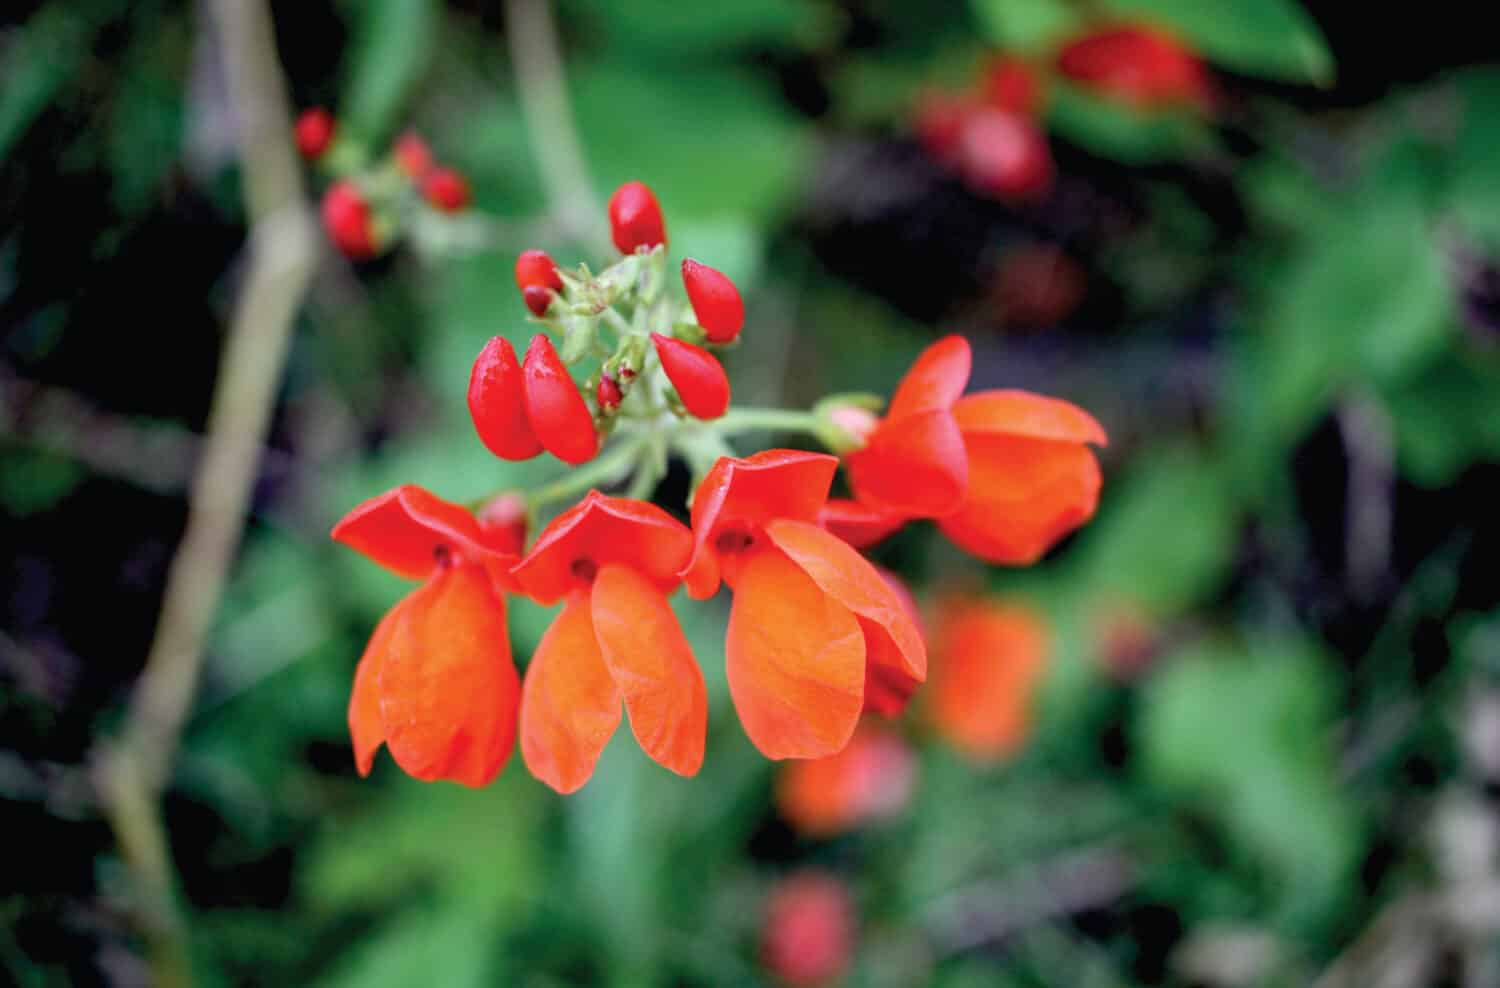 Closeup of scarlet runner bean flowers in a garden.